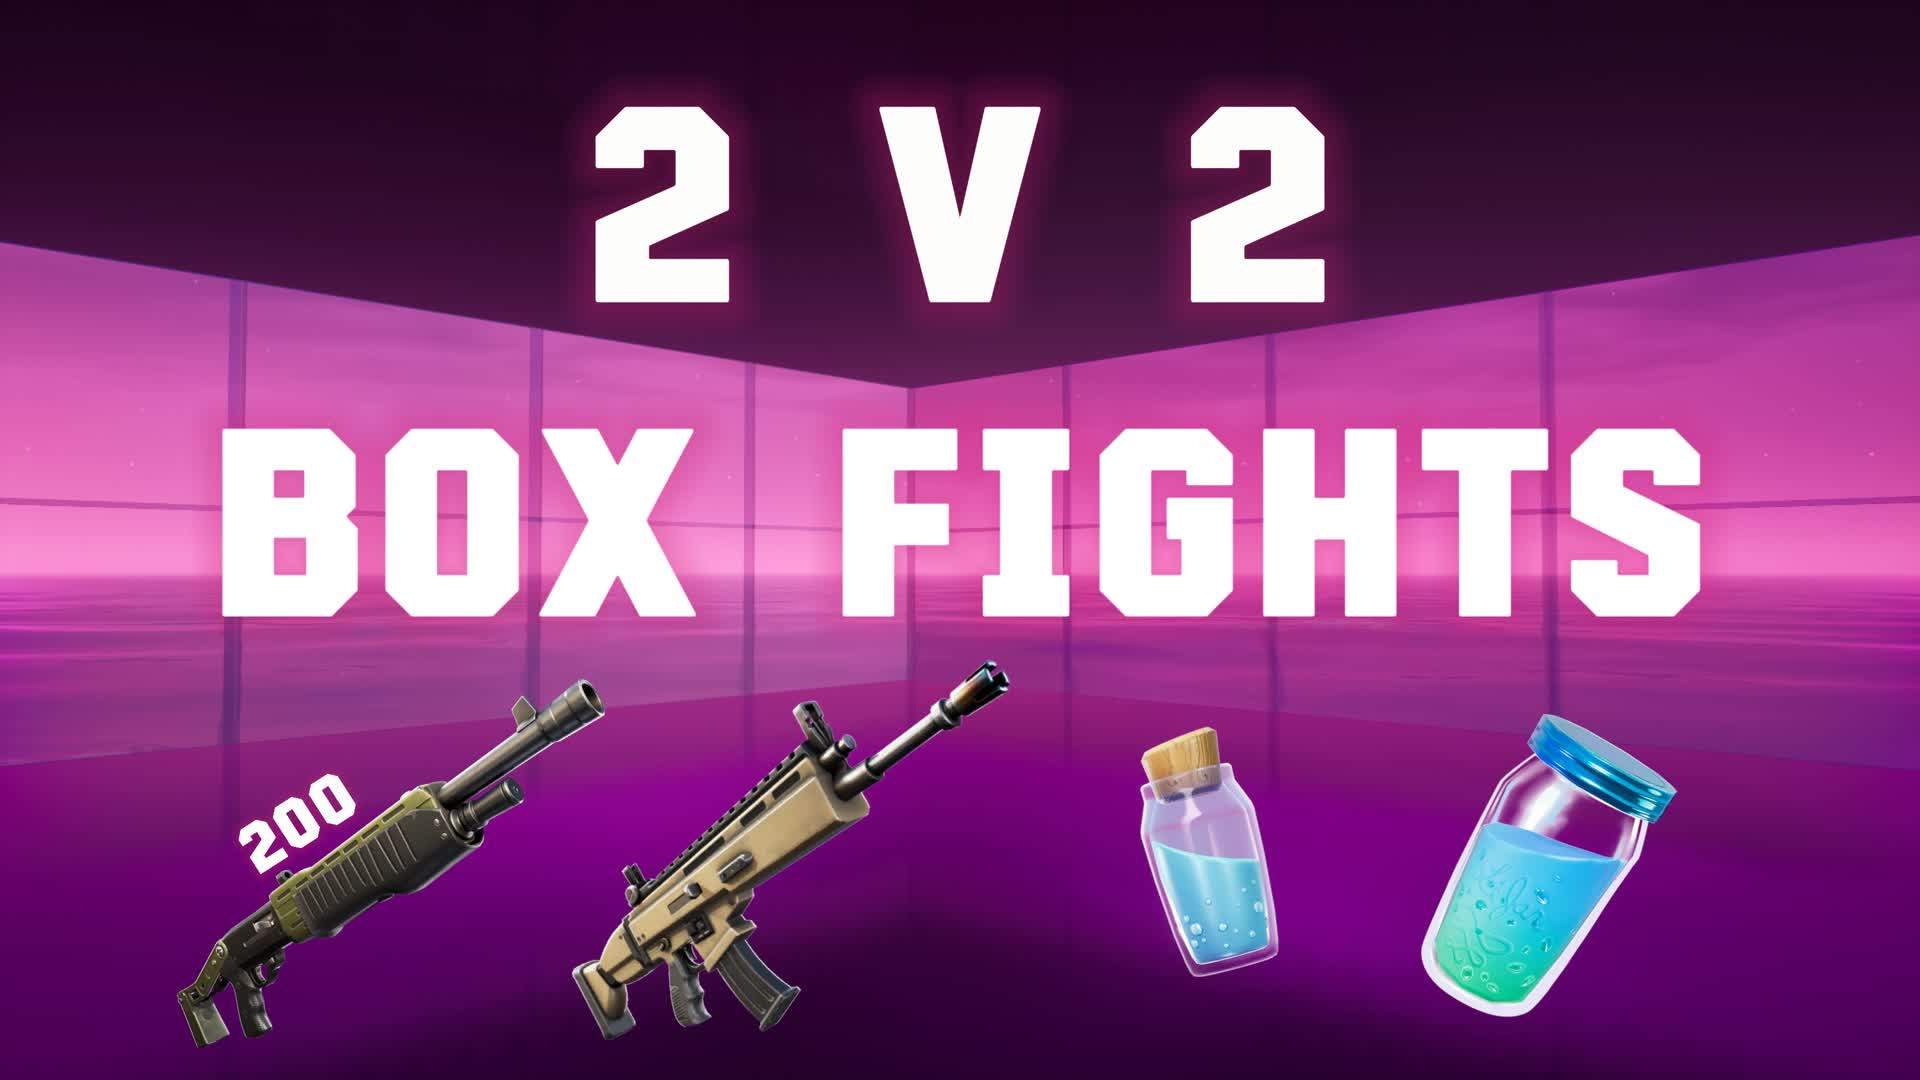 MEGA BOX FIGHT 2V2